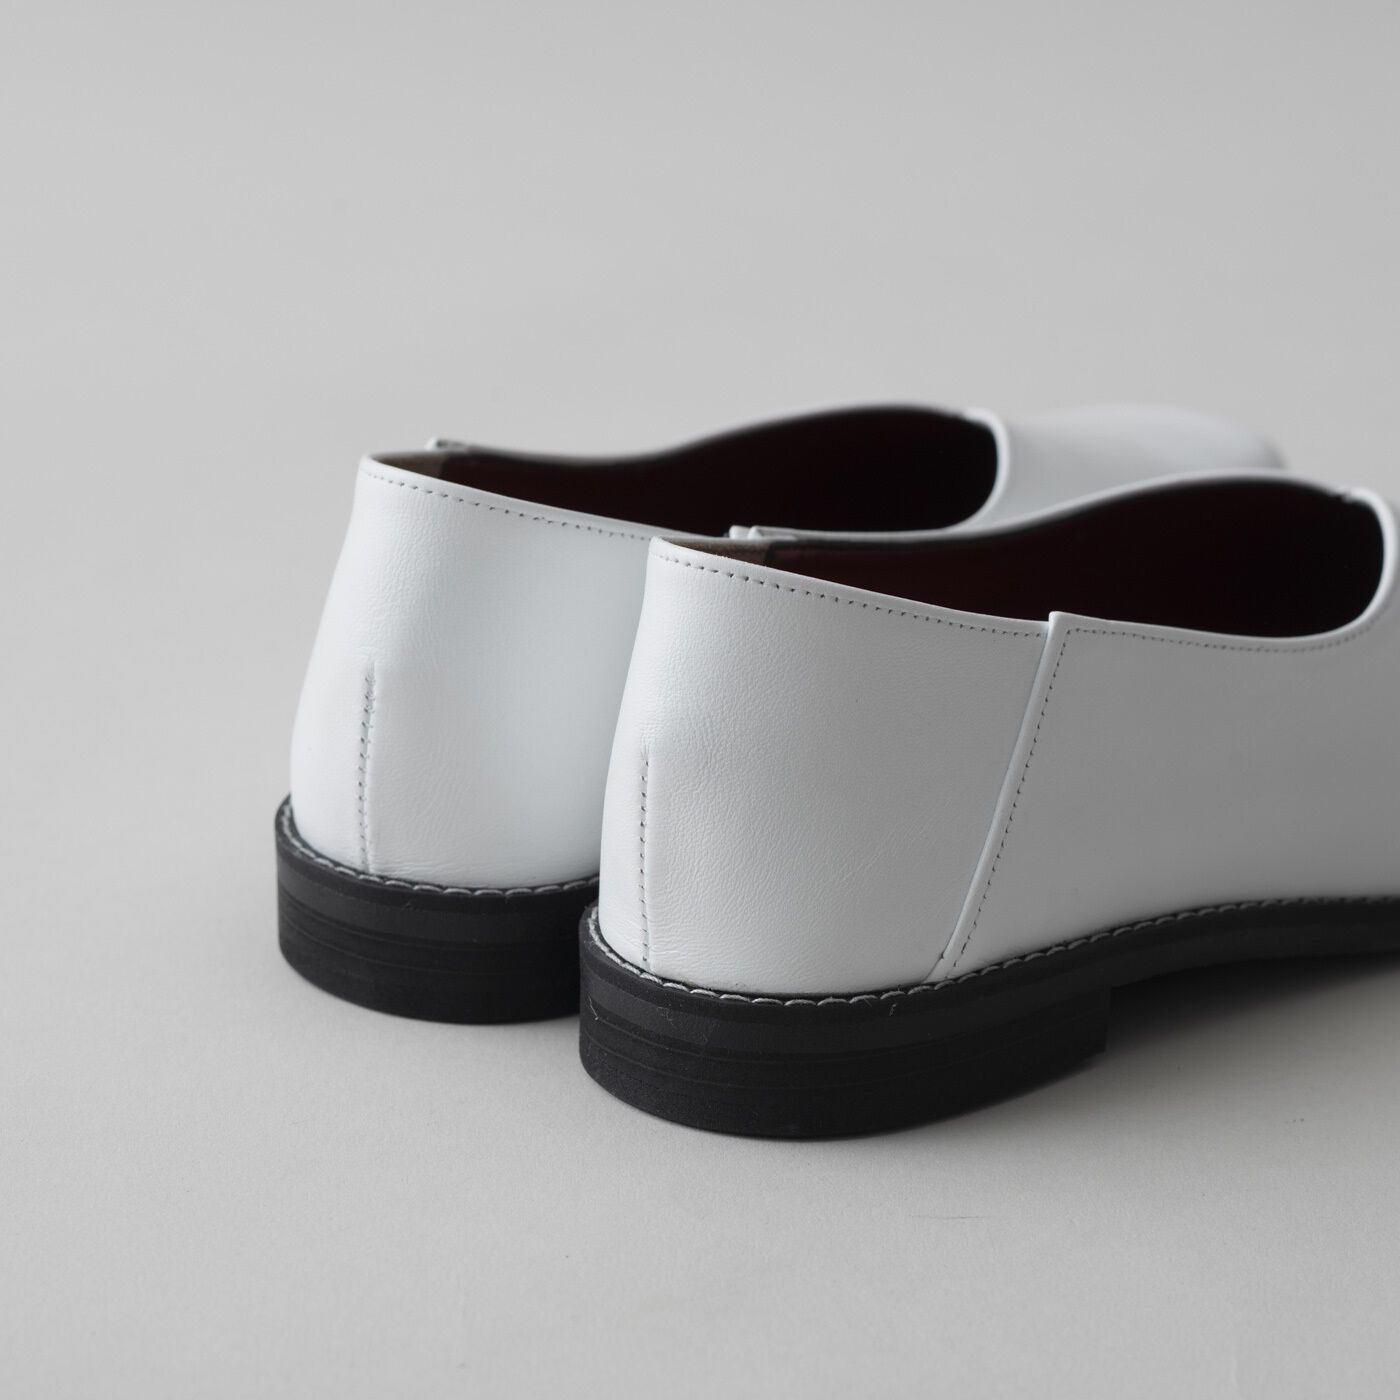 ＆Stories|長田の靴メーカーと作った　職人本革のスクエアノーズシューズ〈ホワイト〉|ほどよいヒール高と疲れにくいクッション性で、機能面もばっちり。